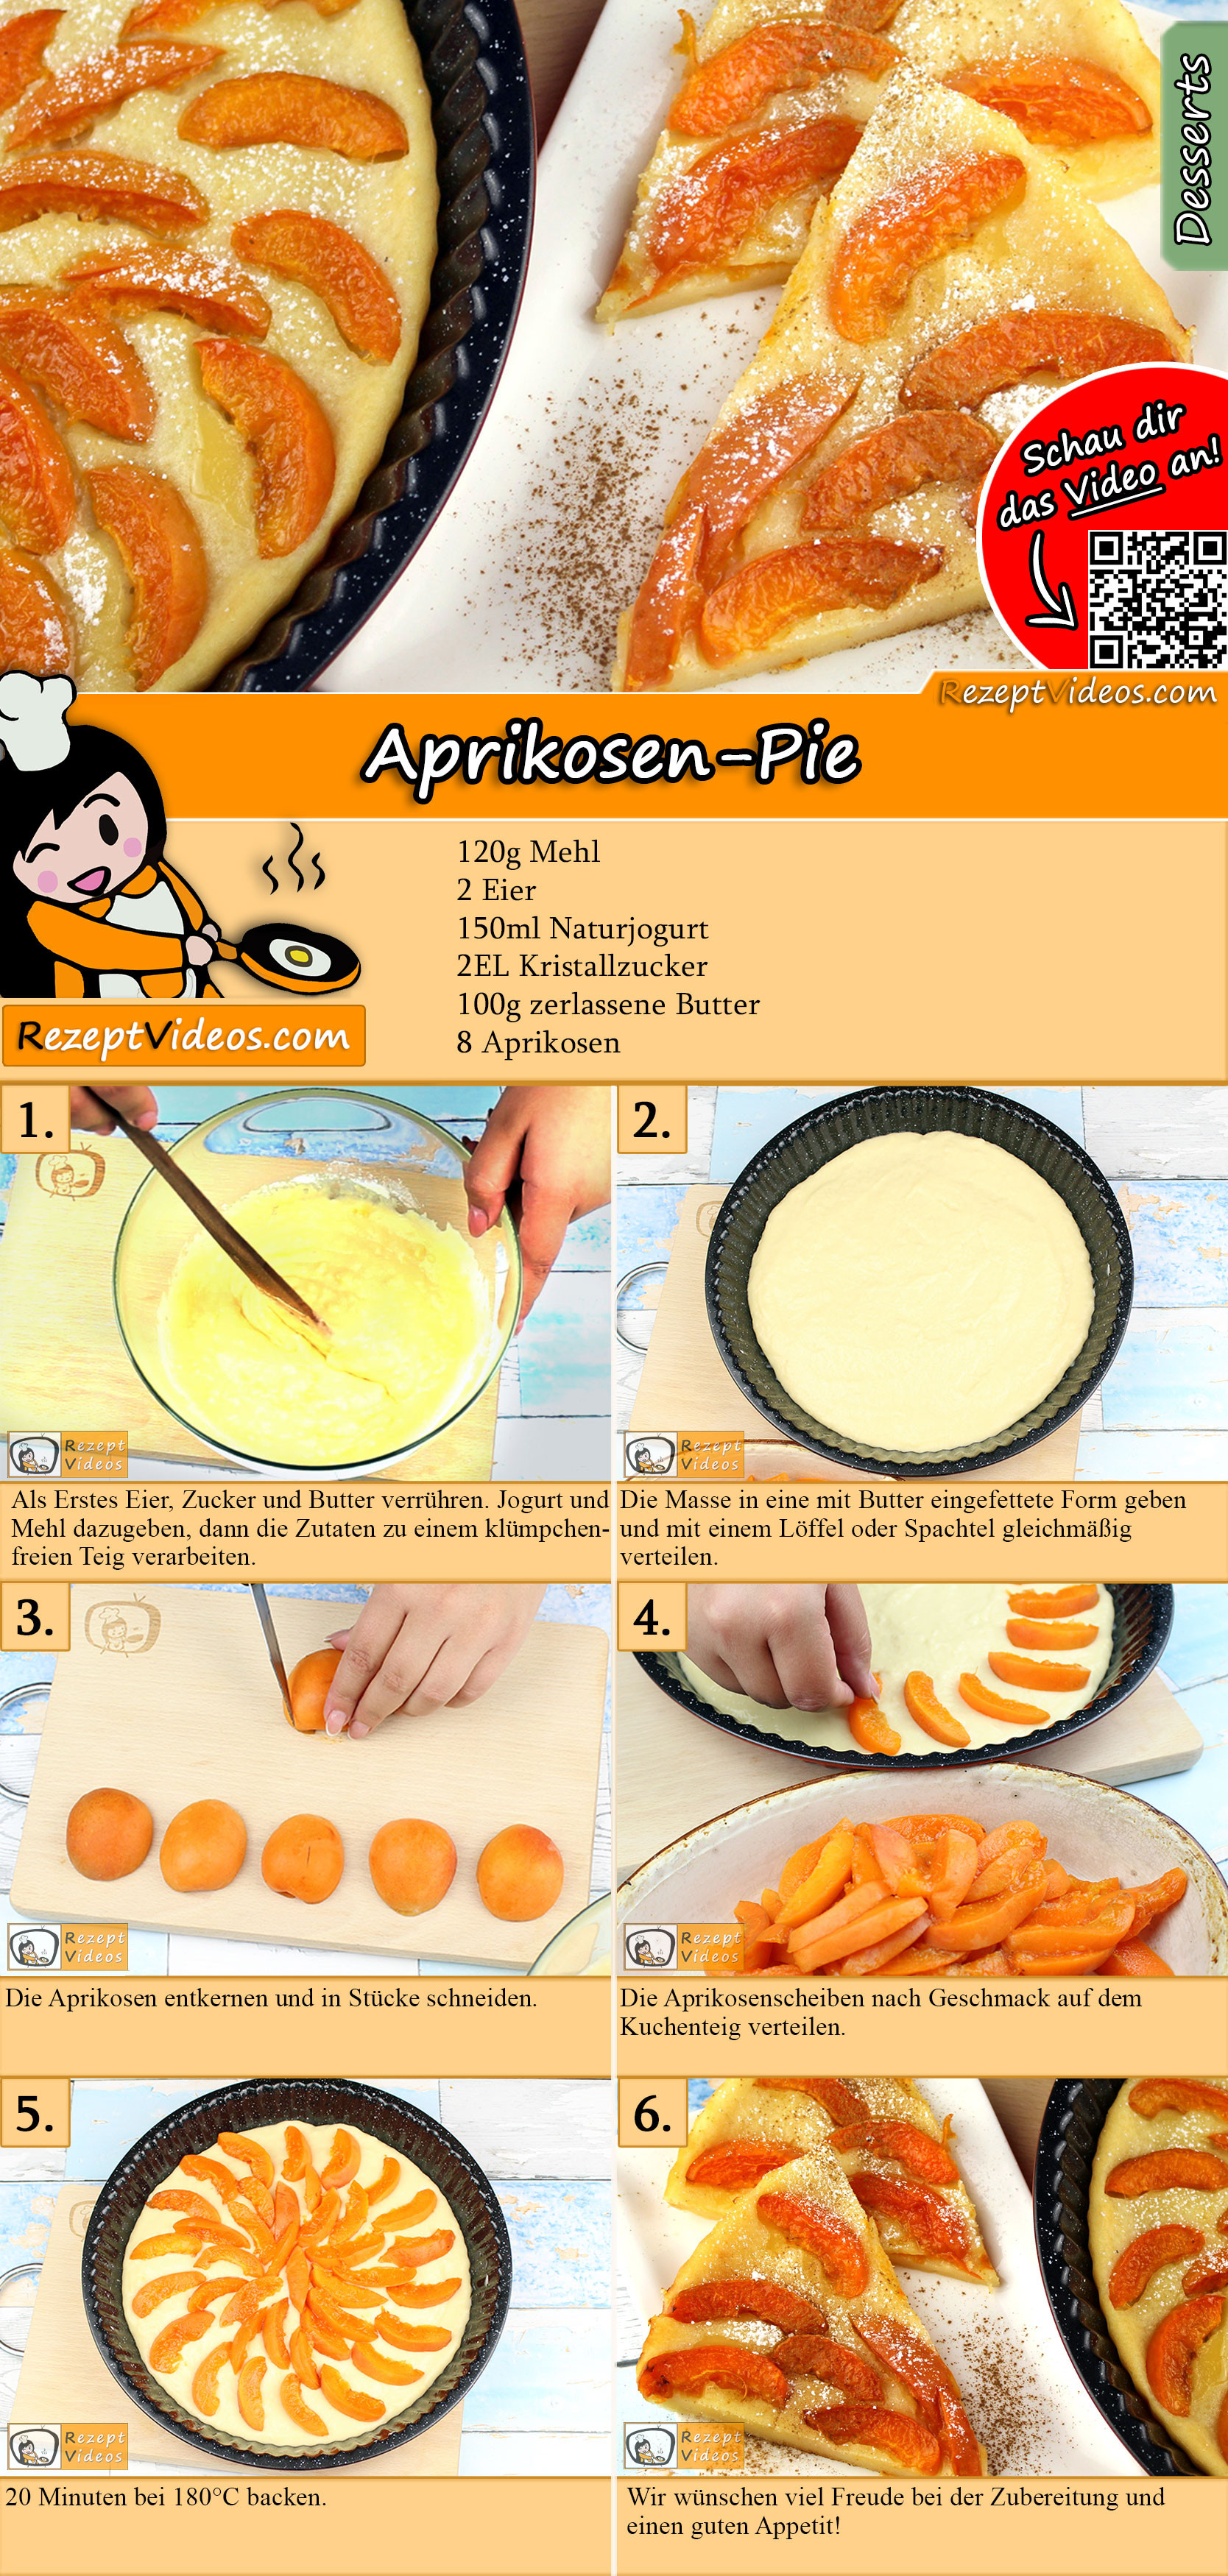 Aprikosen-Pie Rezept mit Video